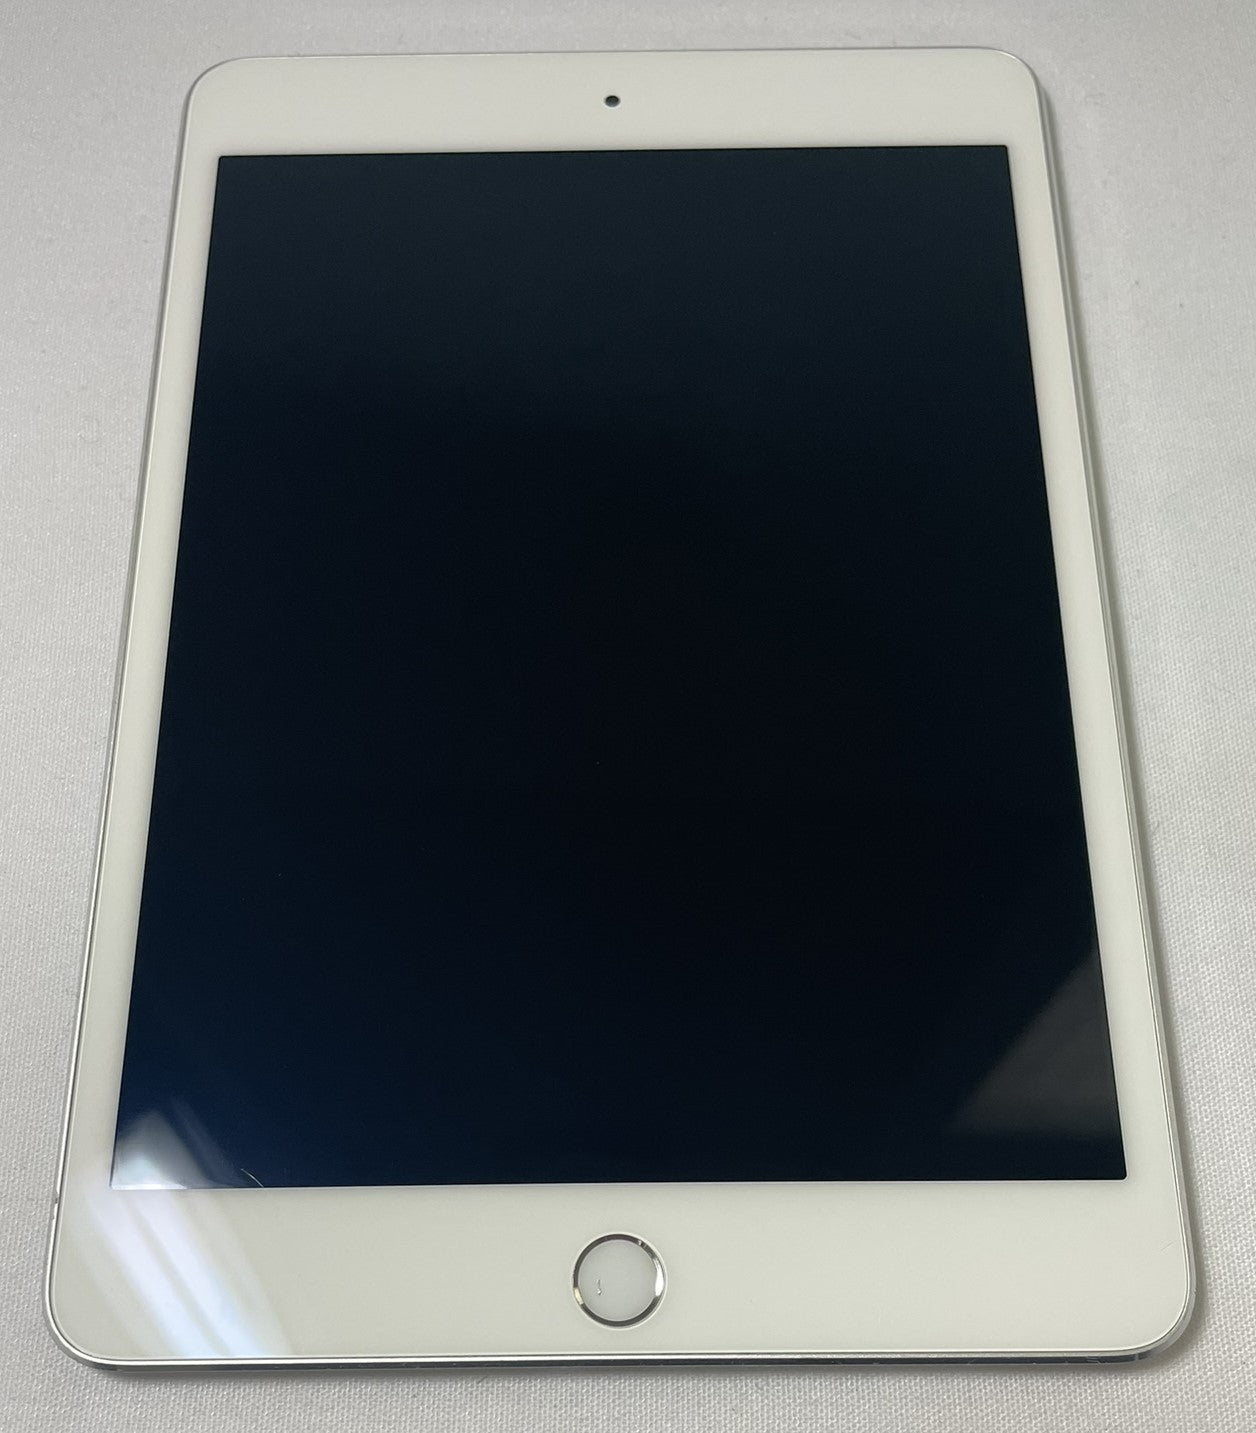 Apple iPad Mini 4 (7.9" Screen) 128GB - WiFi Silver